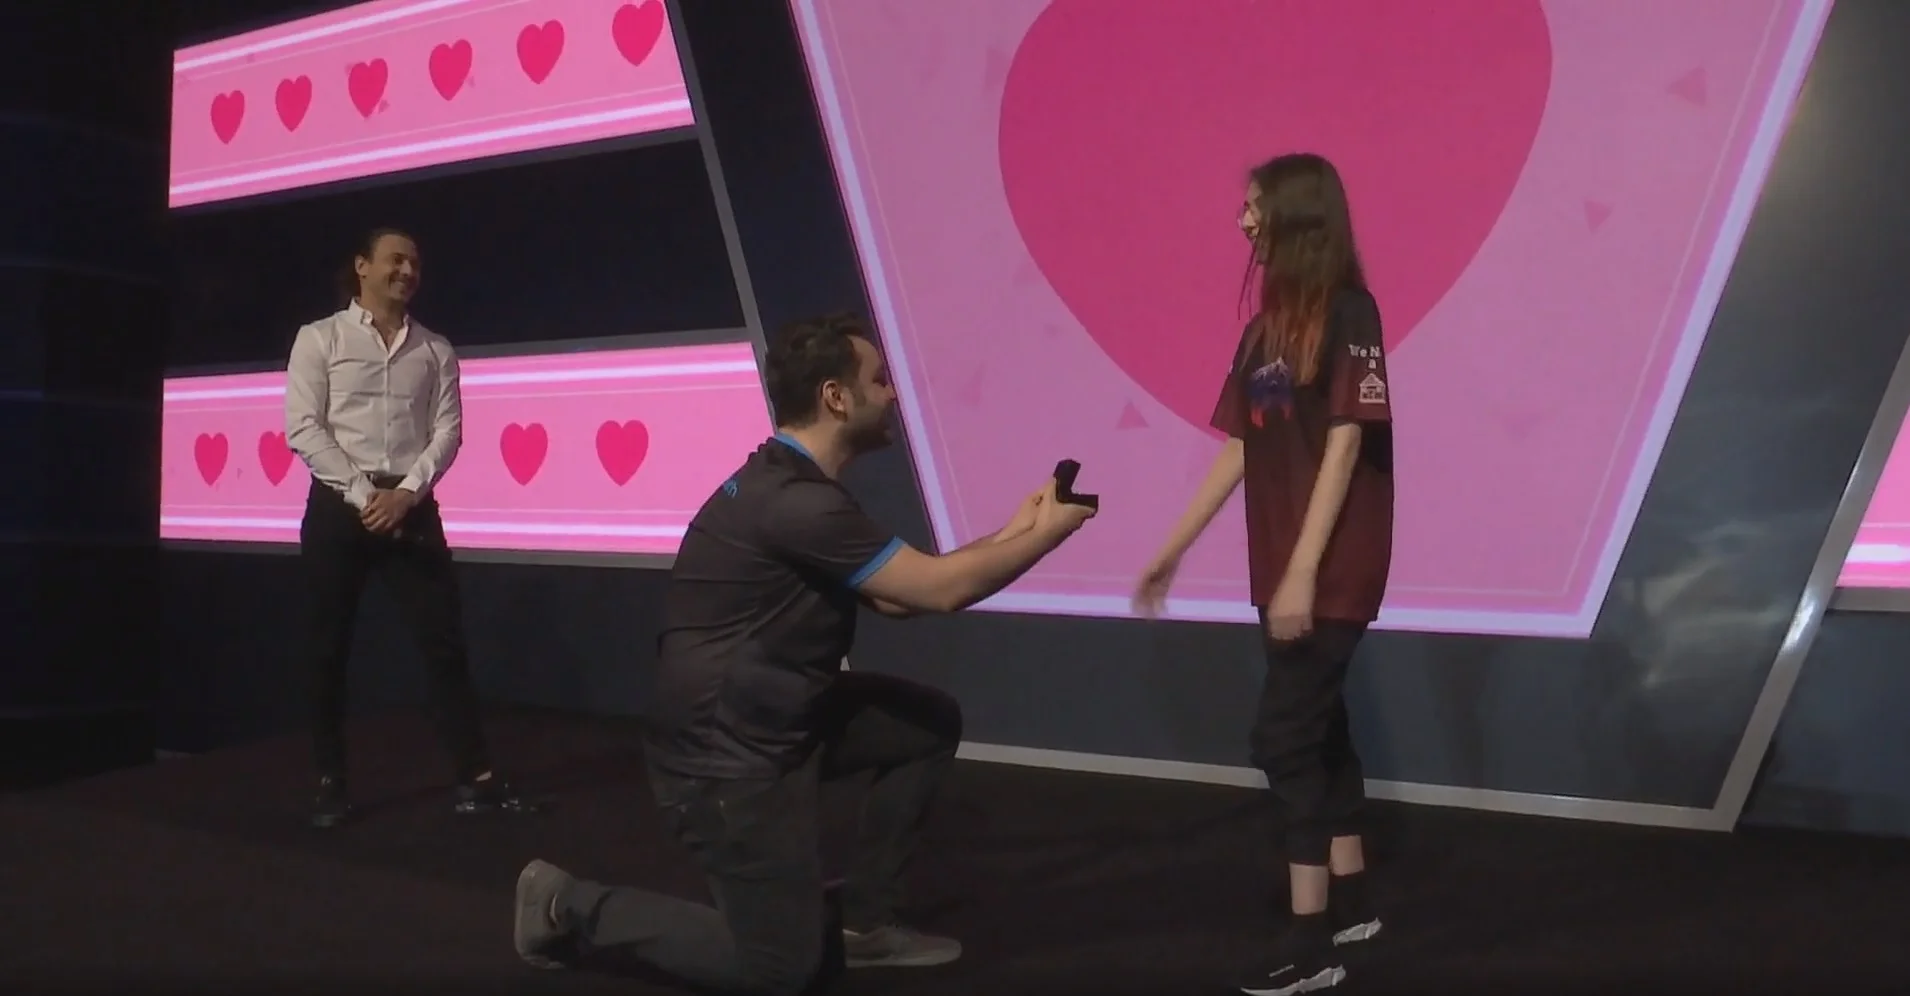 Игрок сделал предложение своей девушке на турнире по PUBG, где они вместе выступают - фото 1